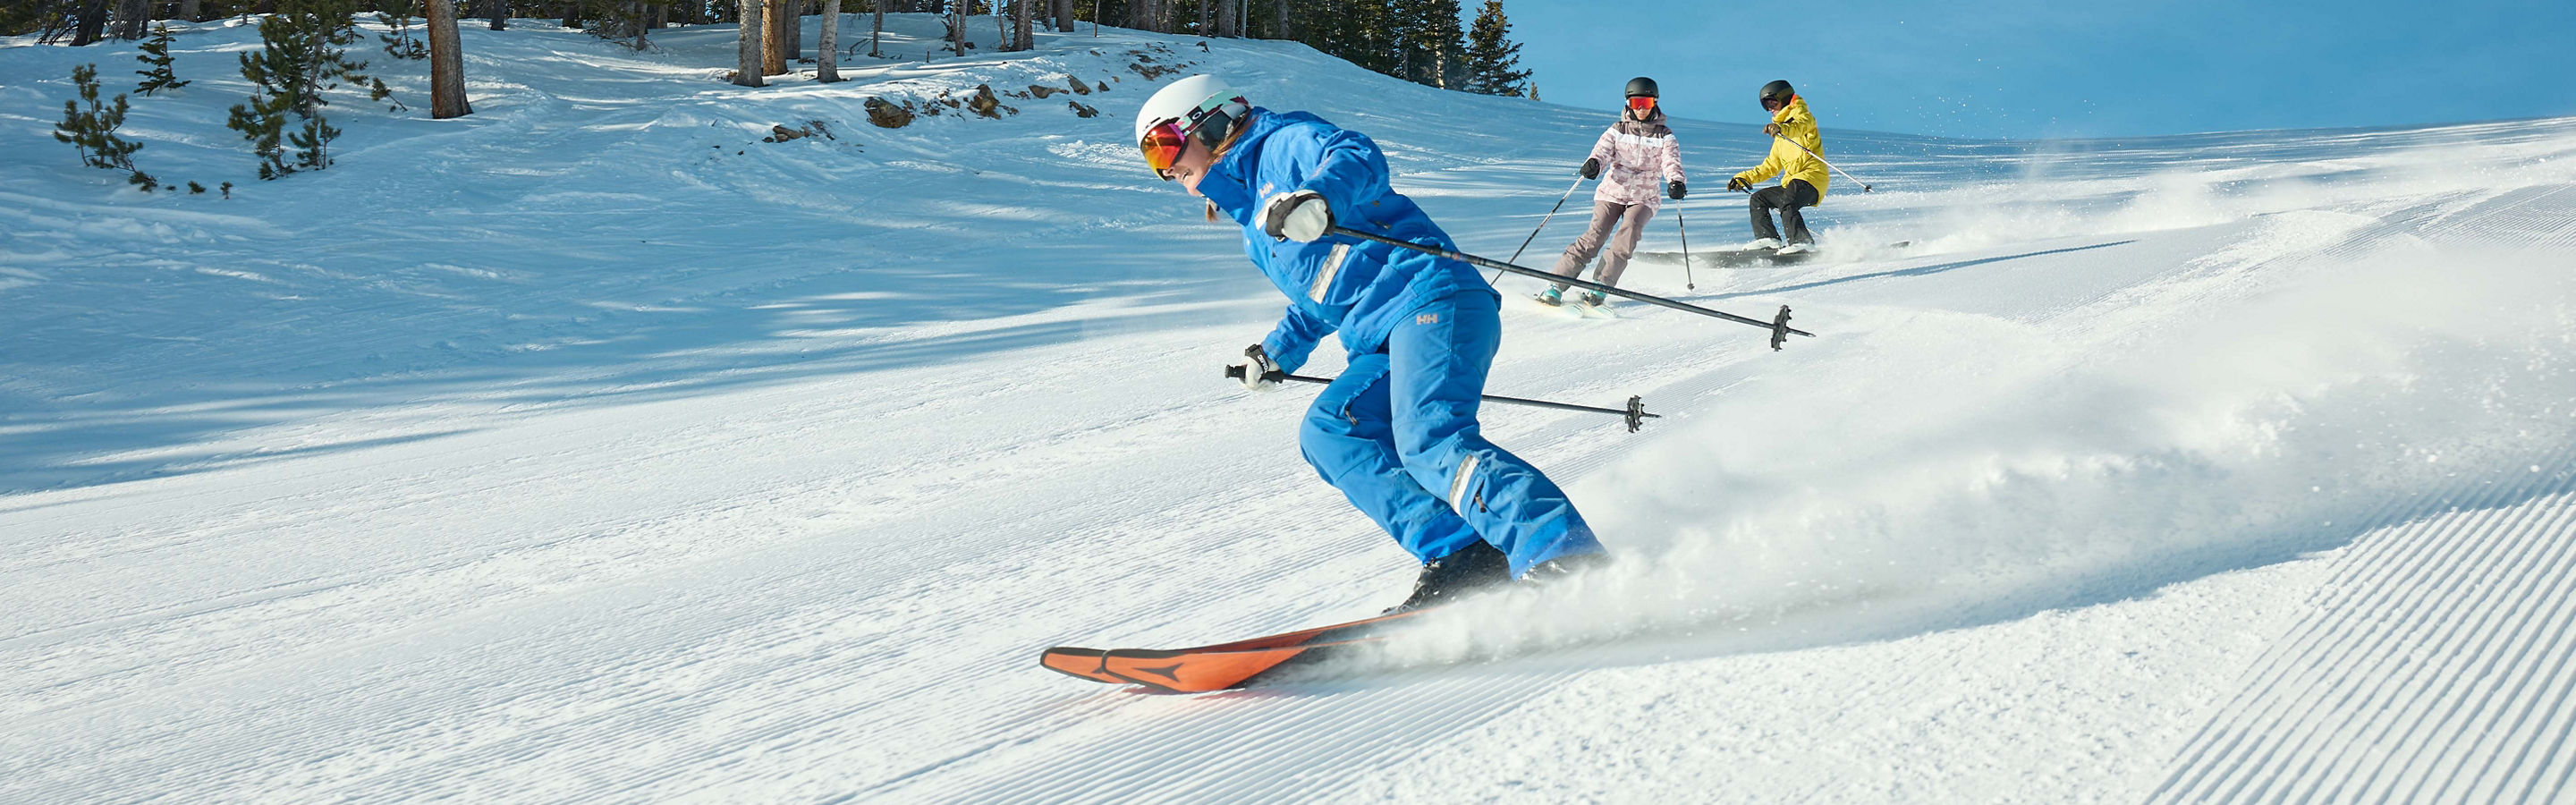 Ski and Snowboard School Breckenridge Breckenridge Resort